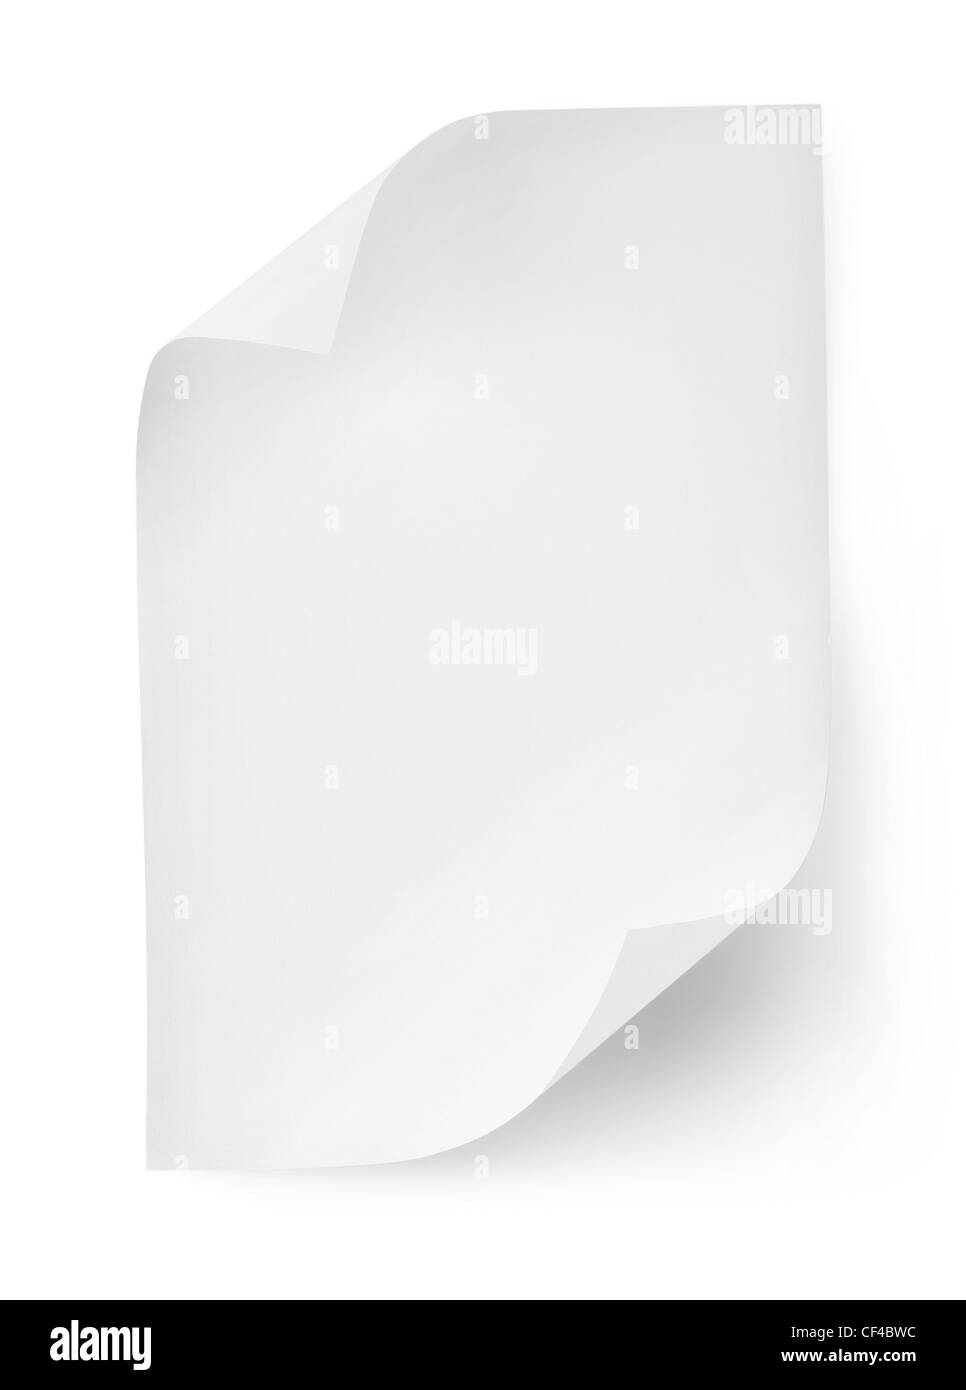 Feuille de papier blanc isolé sur fond blanc. Clipping path Banque D'Images